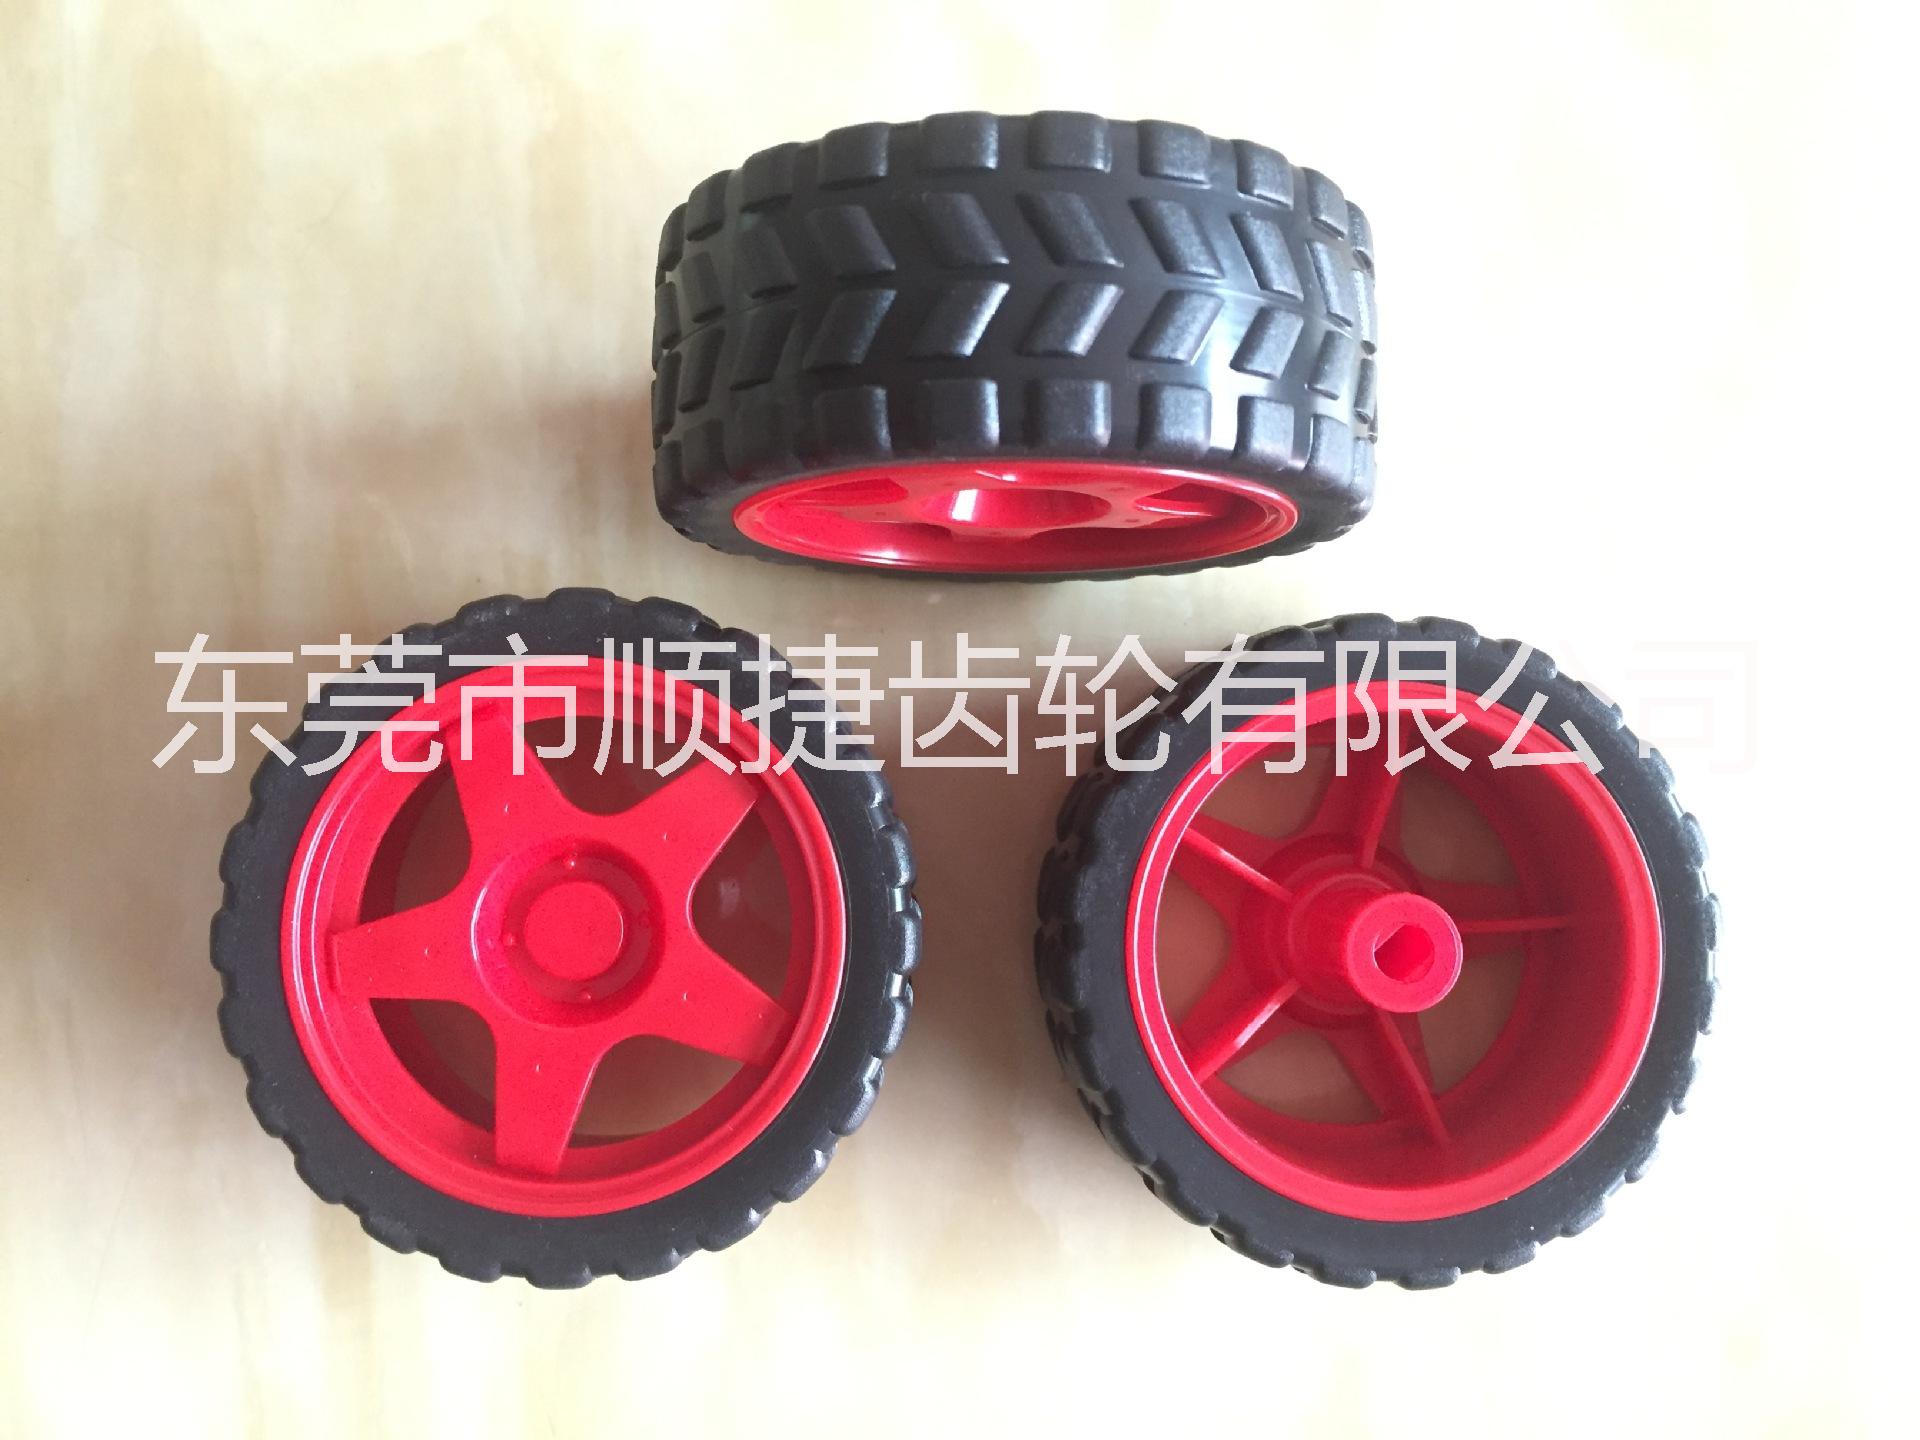 玩具轮胎 橡胶环保轮胎 DIY轮胎 智能轮胎 机器人轮胎